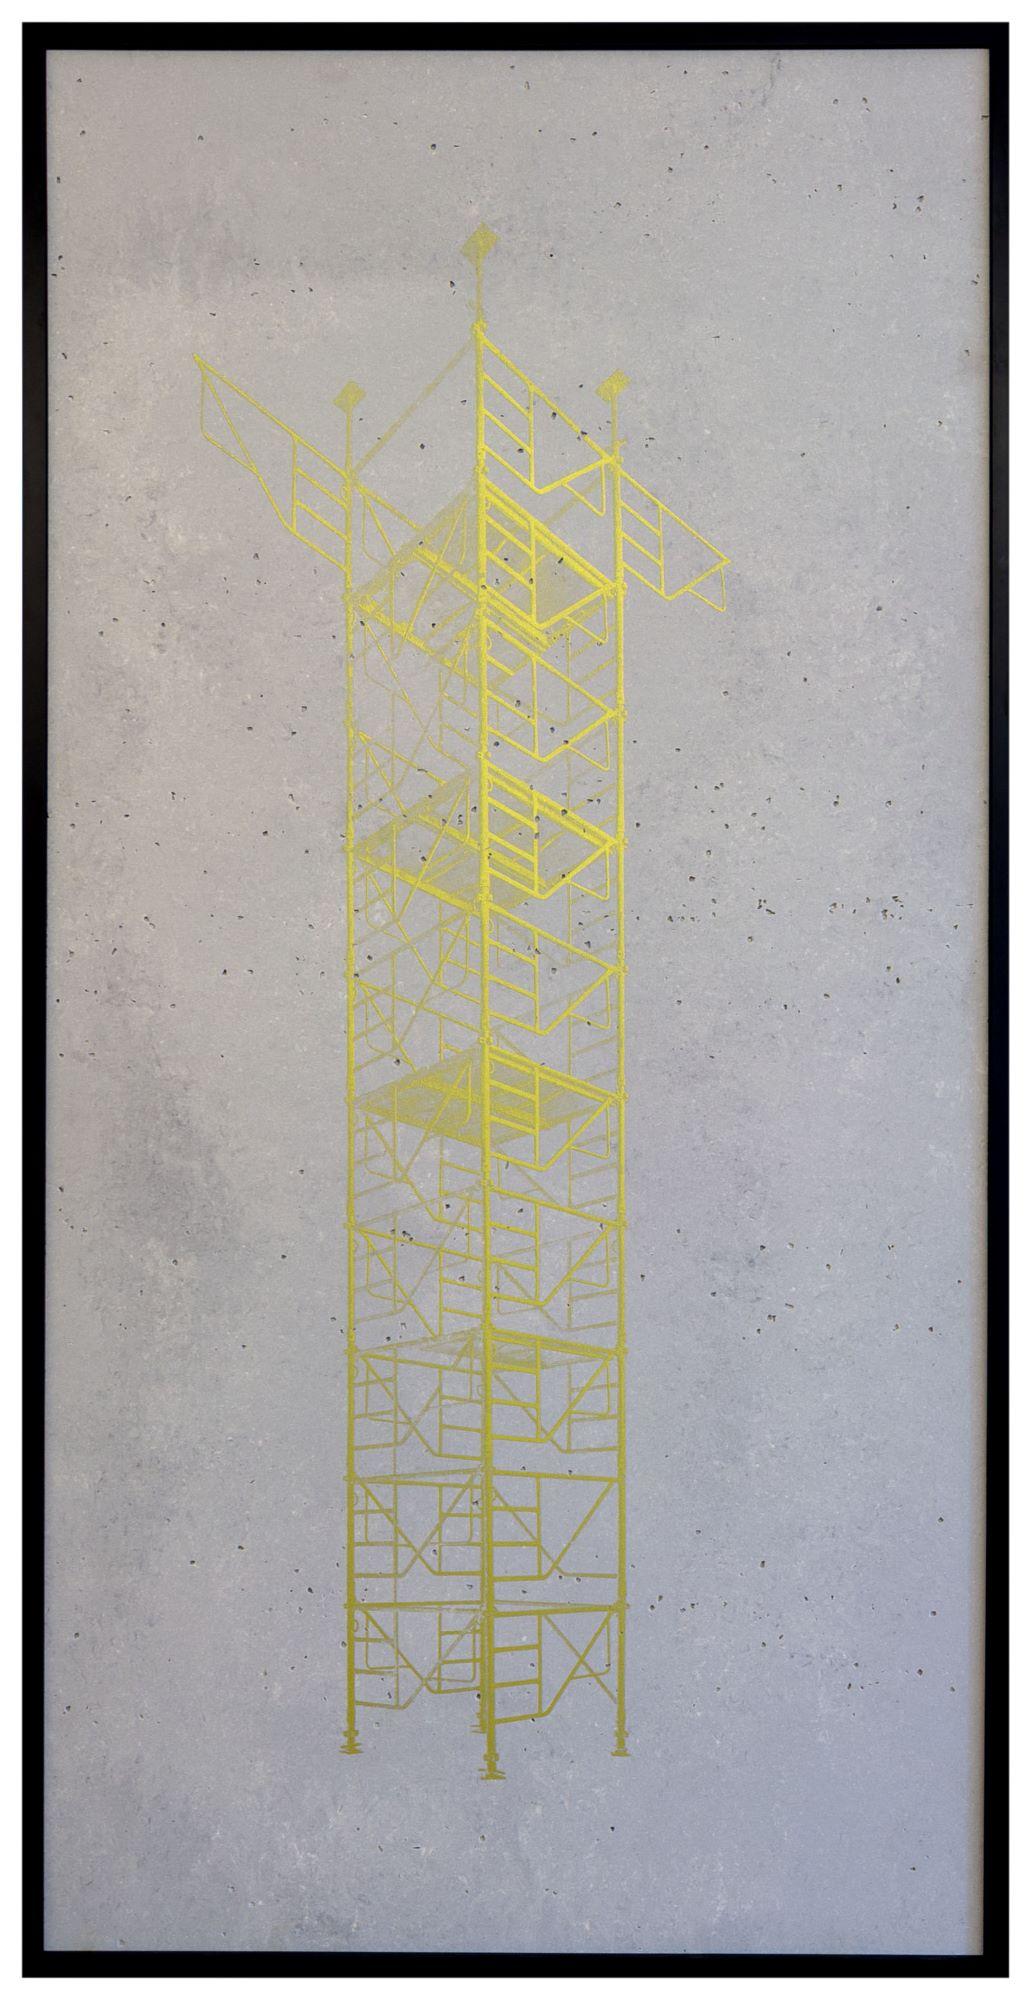 Concrete Scaffolding 01 ist eine limitierte Auflage der Fotografie des zeitgenössischen Künstlers Bruno Fontana. Dieses Foto ist ein Siebdruck mit Goldfarbe auf Betonsteinzeug. Die Abmessungen betragen 120 × 60 cm. Das Kunstwerk wird mit einem